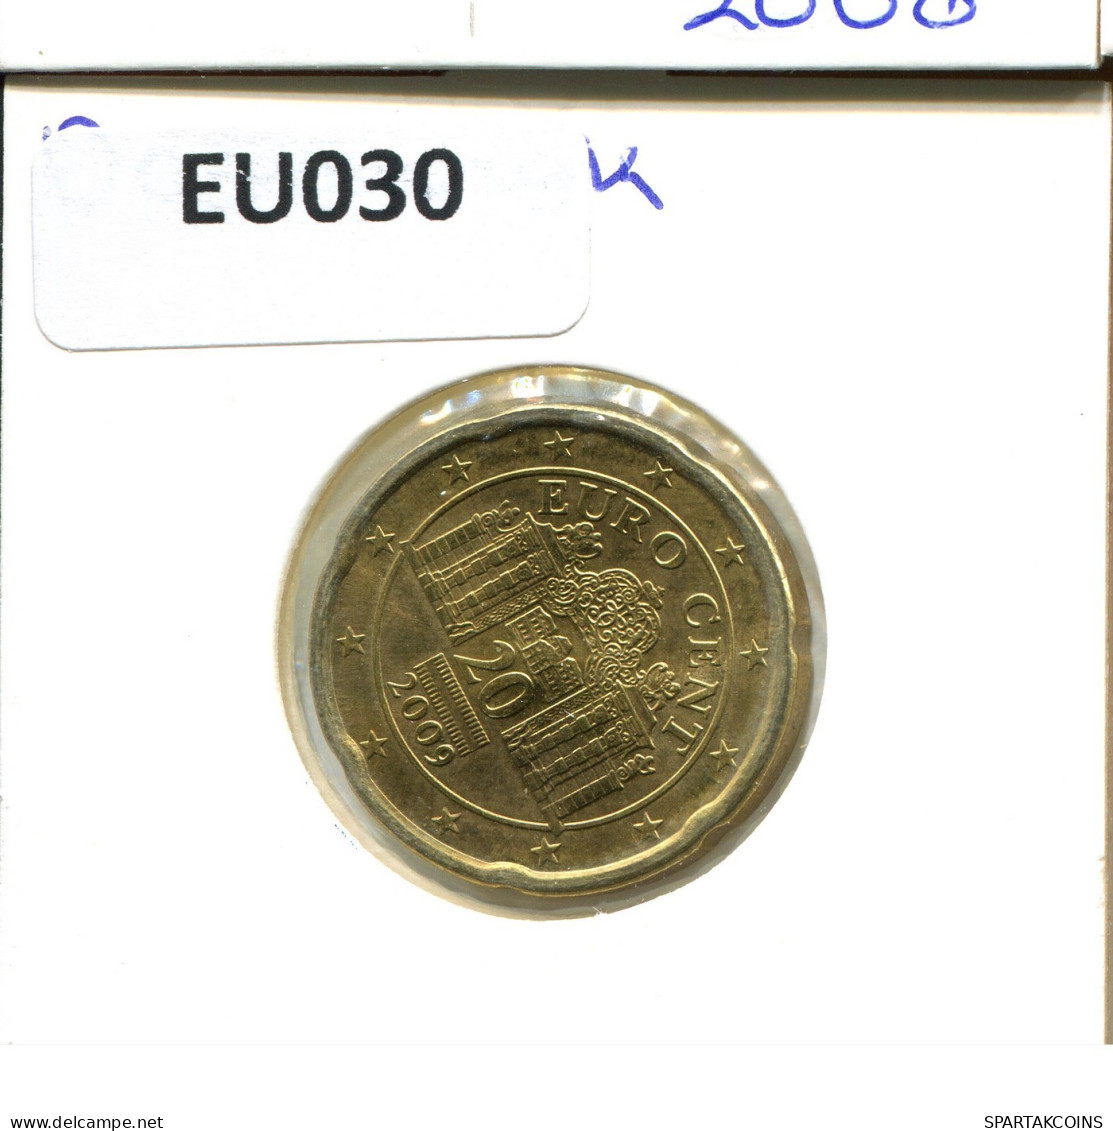 20 EURO CENTS 2009 AUTRICHE AUSTRIA Pièce #EU030.F.A - Austria